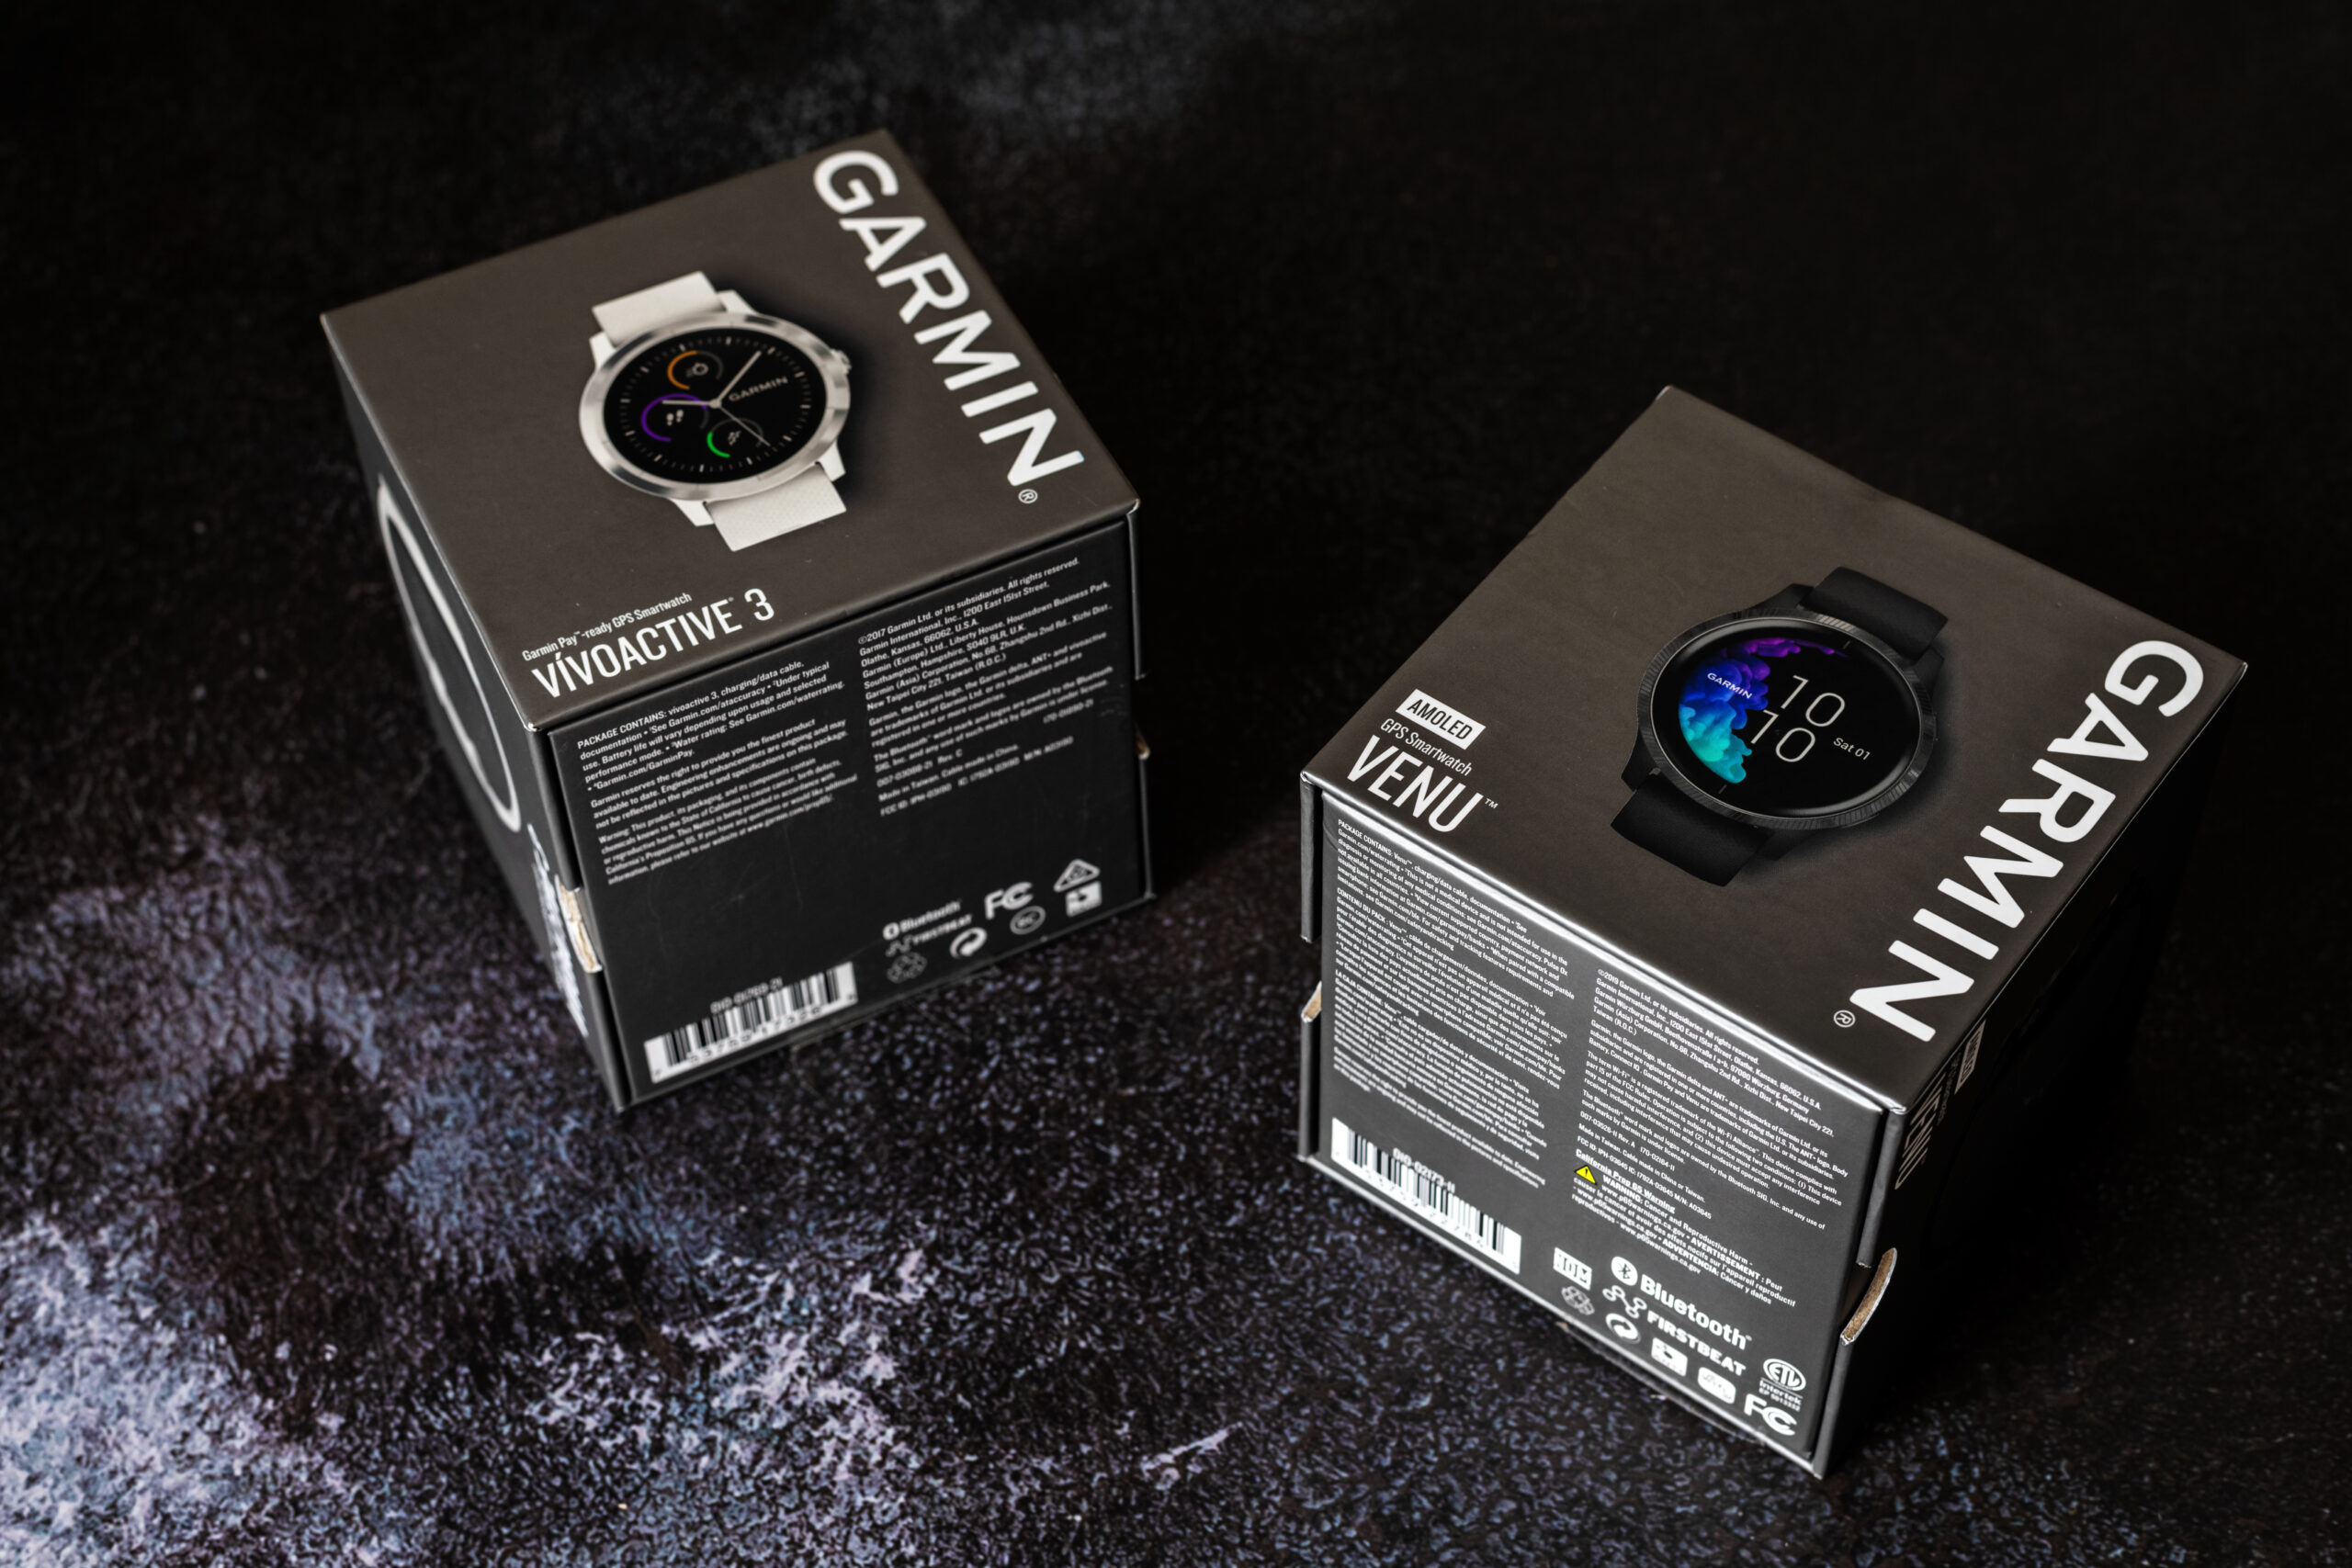 Dwa smartwatche Garmin w pudełku leżące na płótnie - widoczne są modele Garmin Venu i Garmin Vivoactive 3